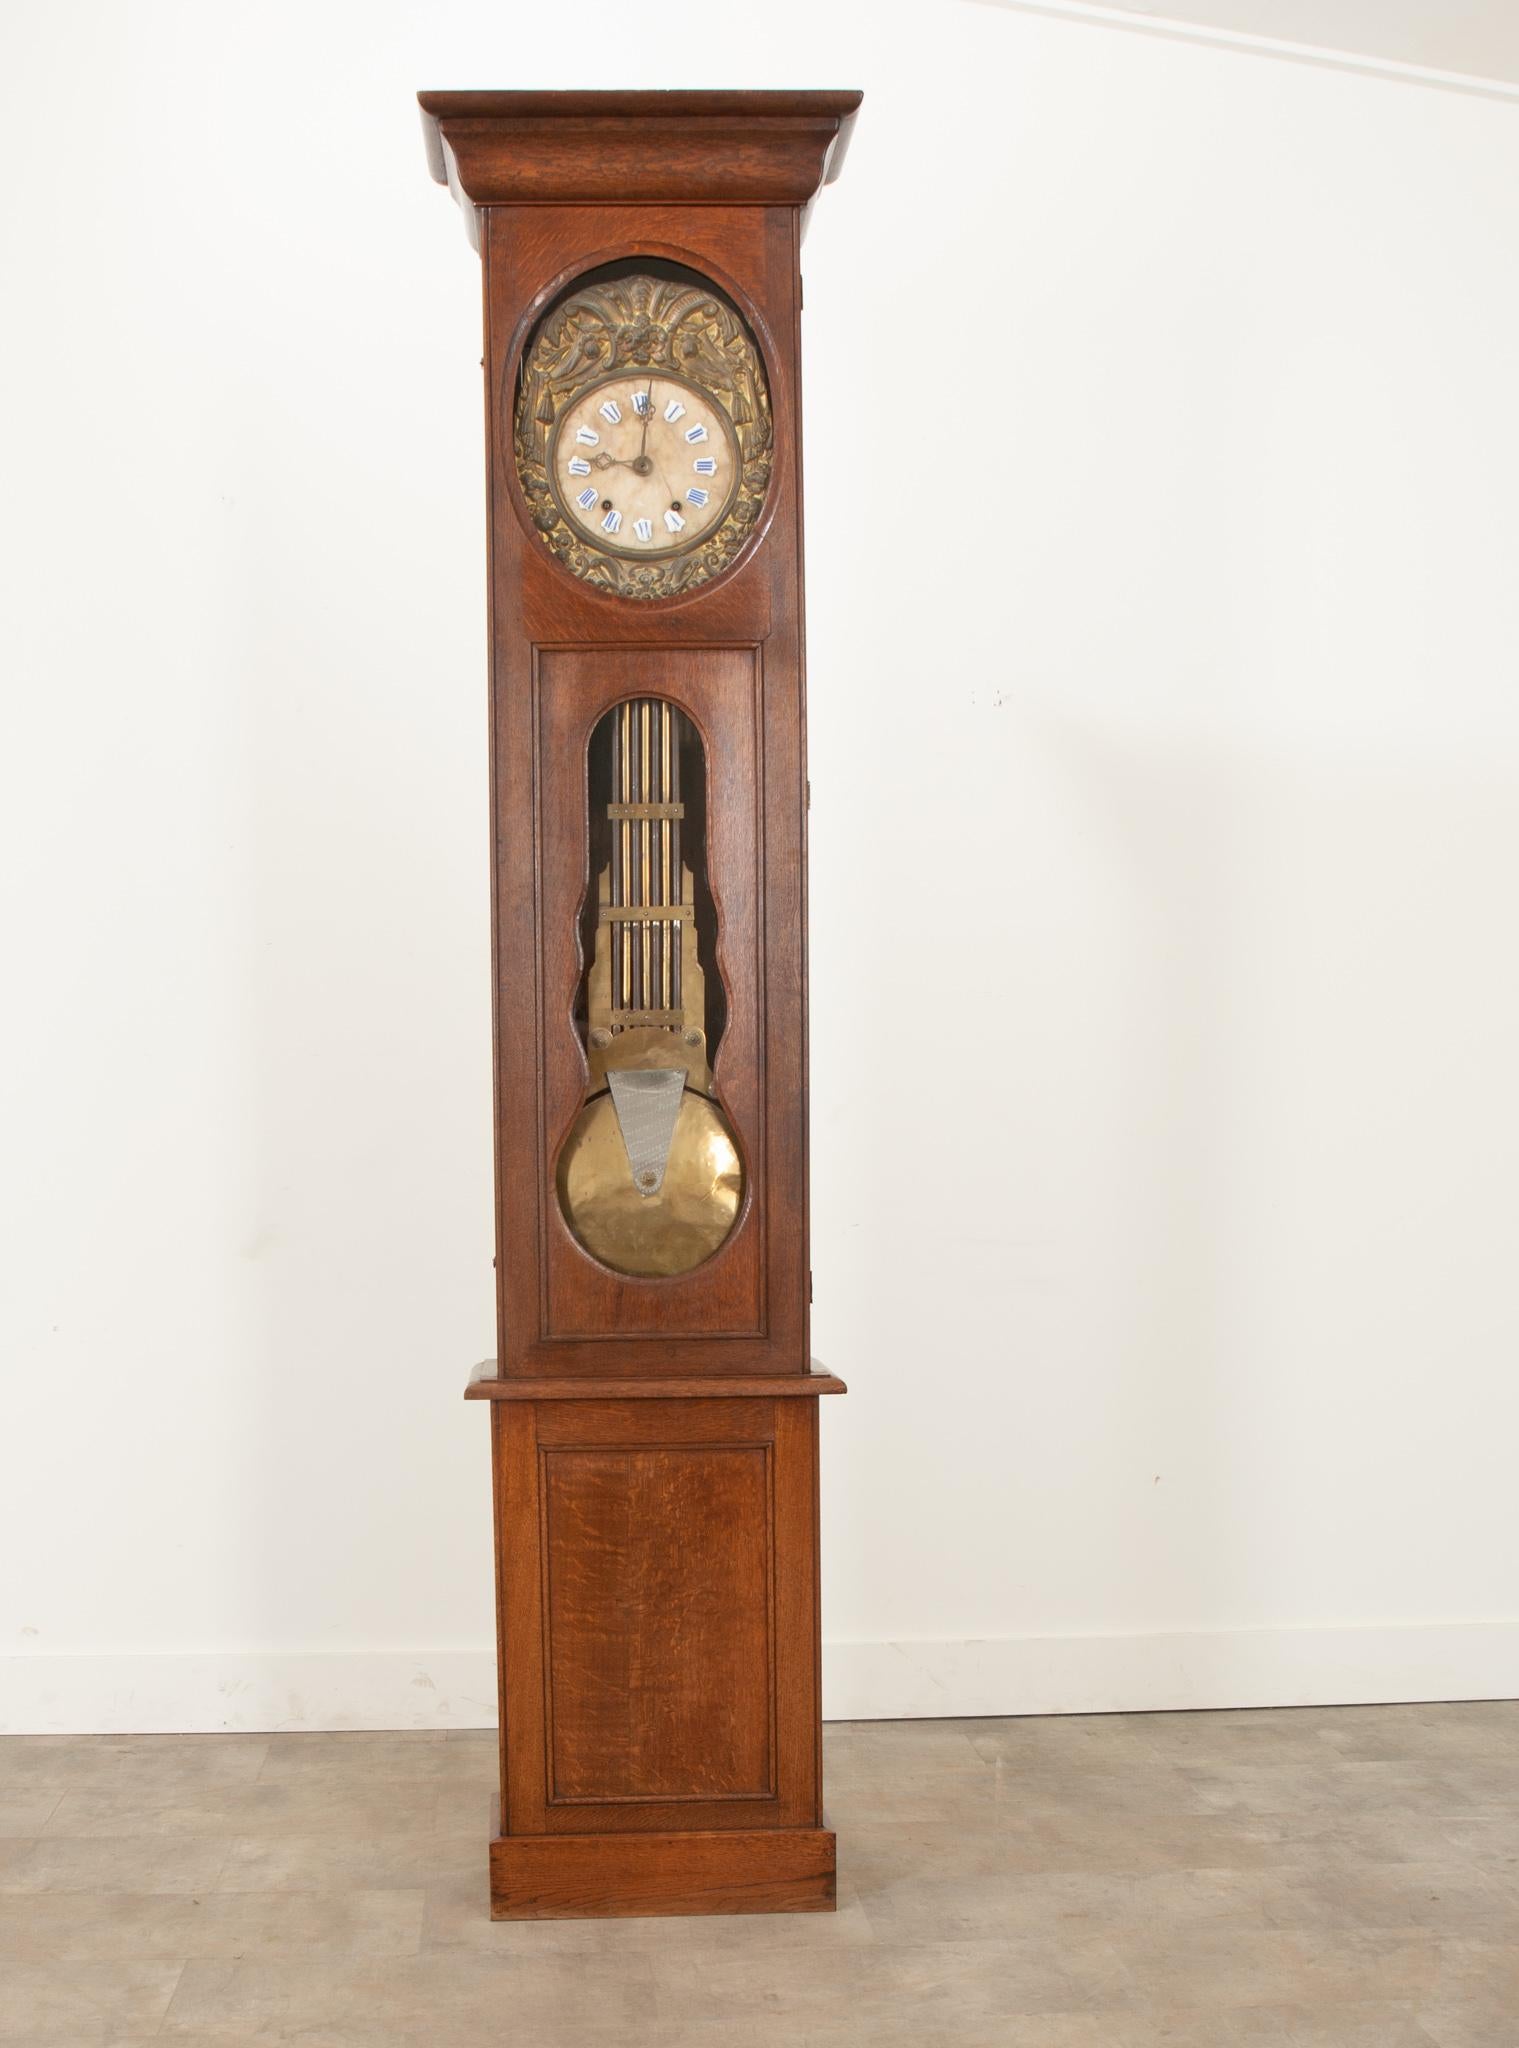 Diese fantastische Uhr mit massivem Eichengehäuse wurde im 19. Jahrhundert in Frankreich hergestellt. Eine scharf geschnitzte Haube über einer einzigen Tür mit Glasscheiben, durch die das Zifferblatt und das Pendel zu sehen sind. Das